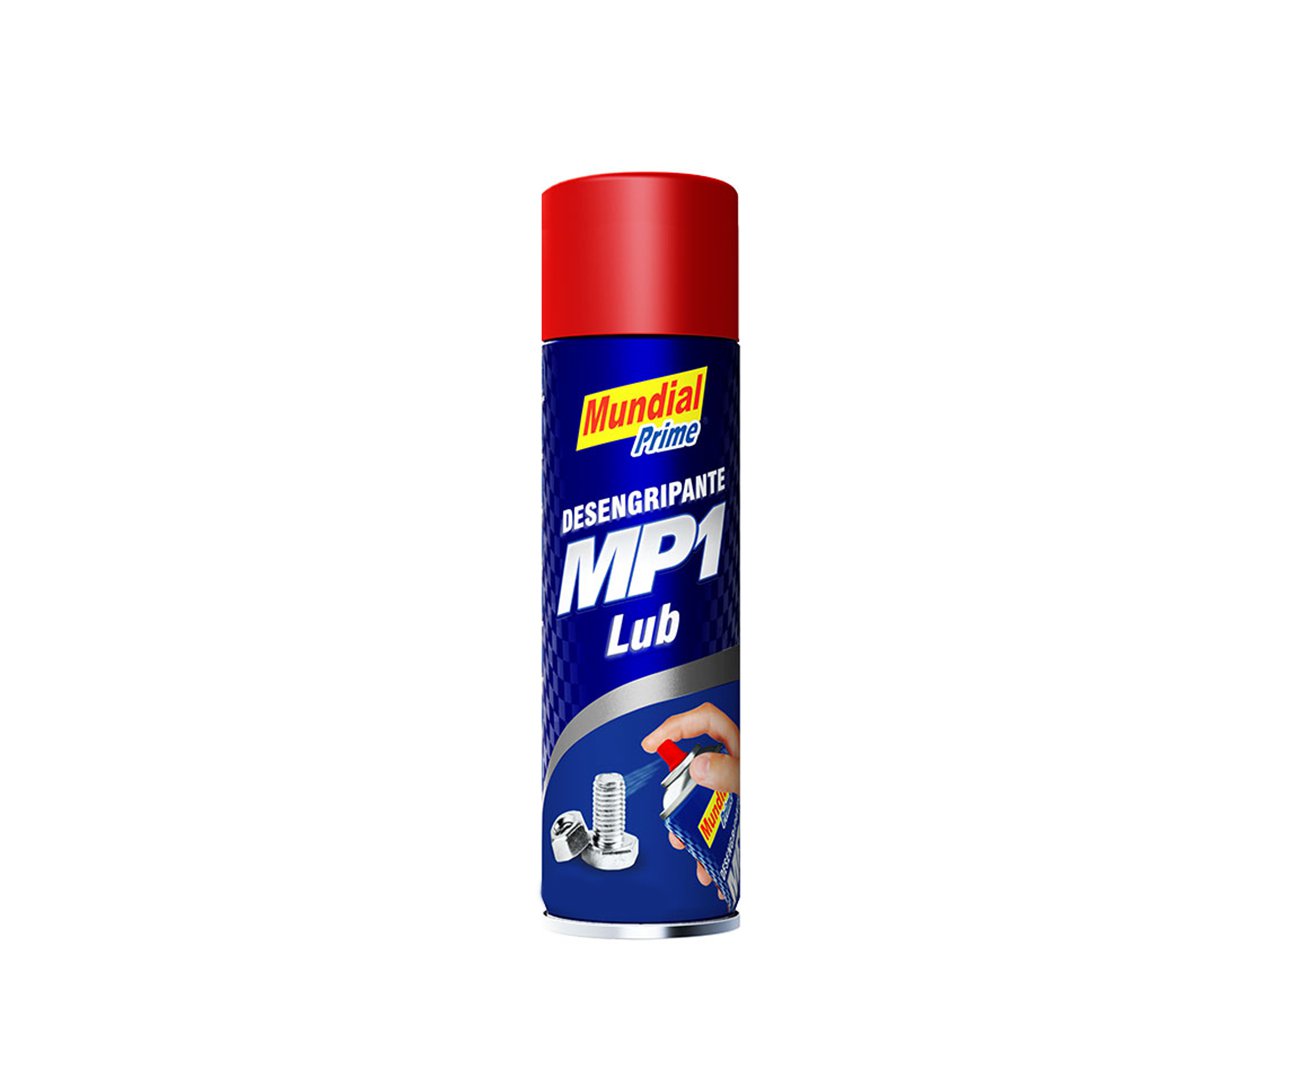 Desengripante Mp1 Mini Spray 70ml - Mundial Prime